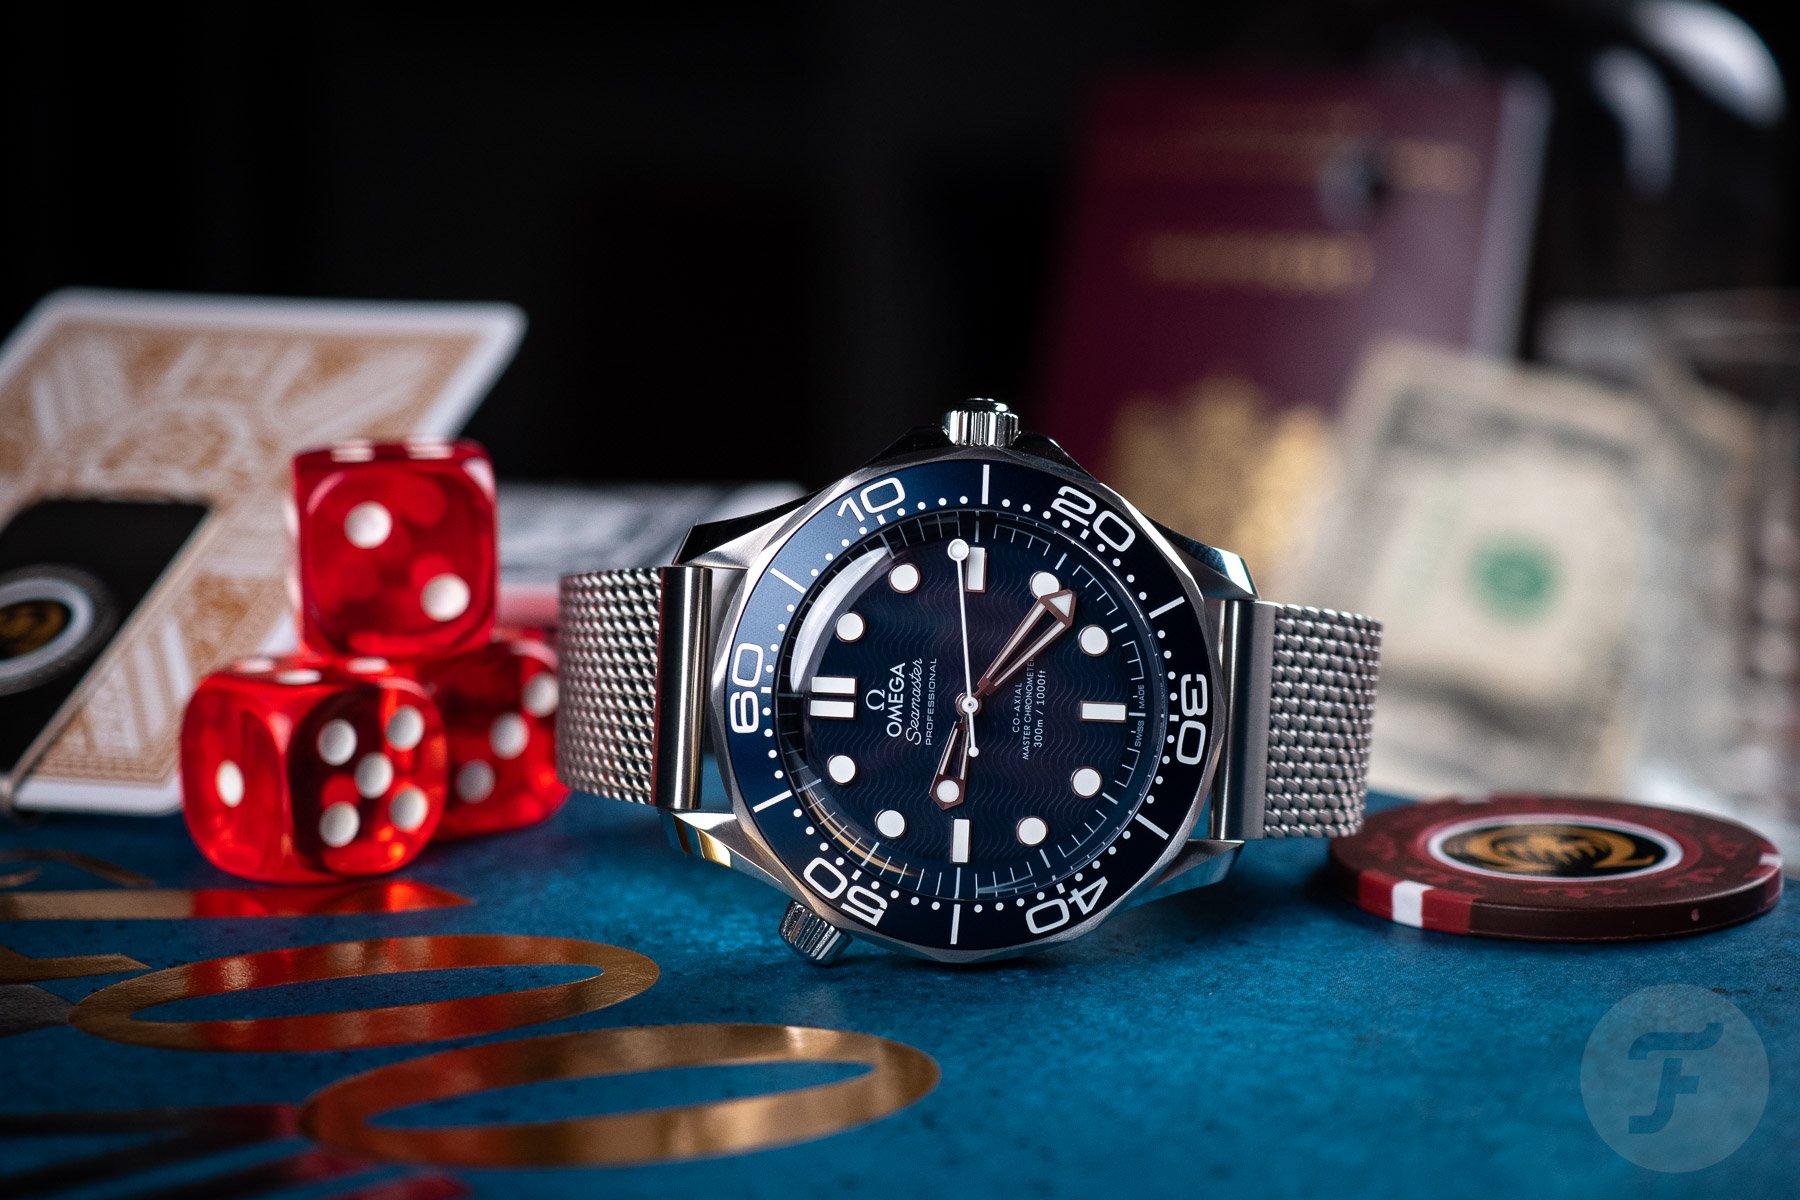 Bond' mesh bracelet for Omega Seamaster - Stainless steel BOND type watch  strap